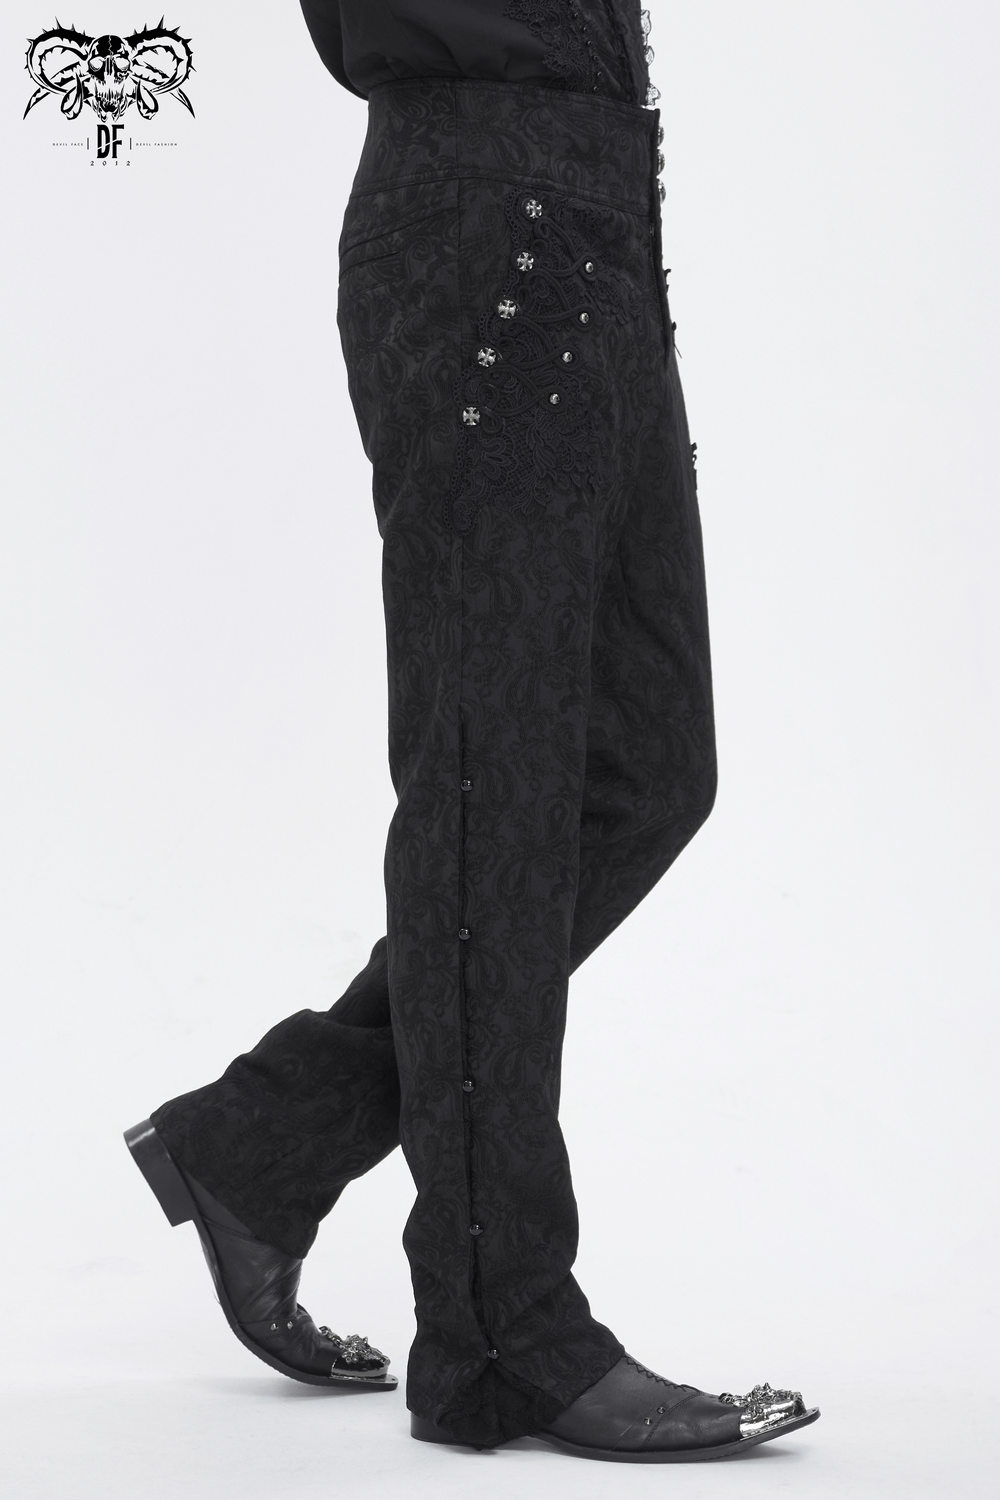 Exquisito pantalón negro con bordado floral y encaje